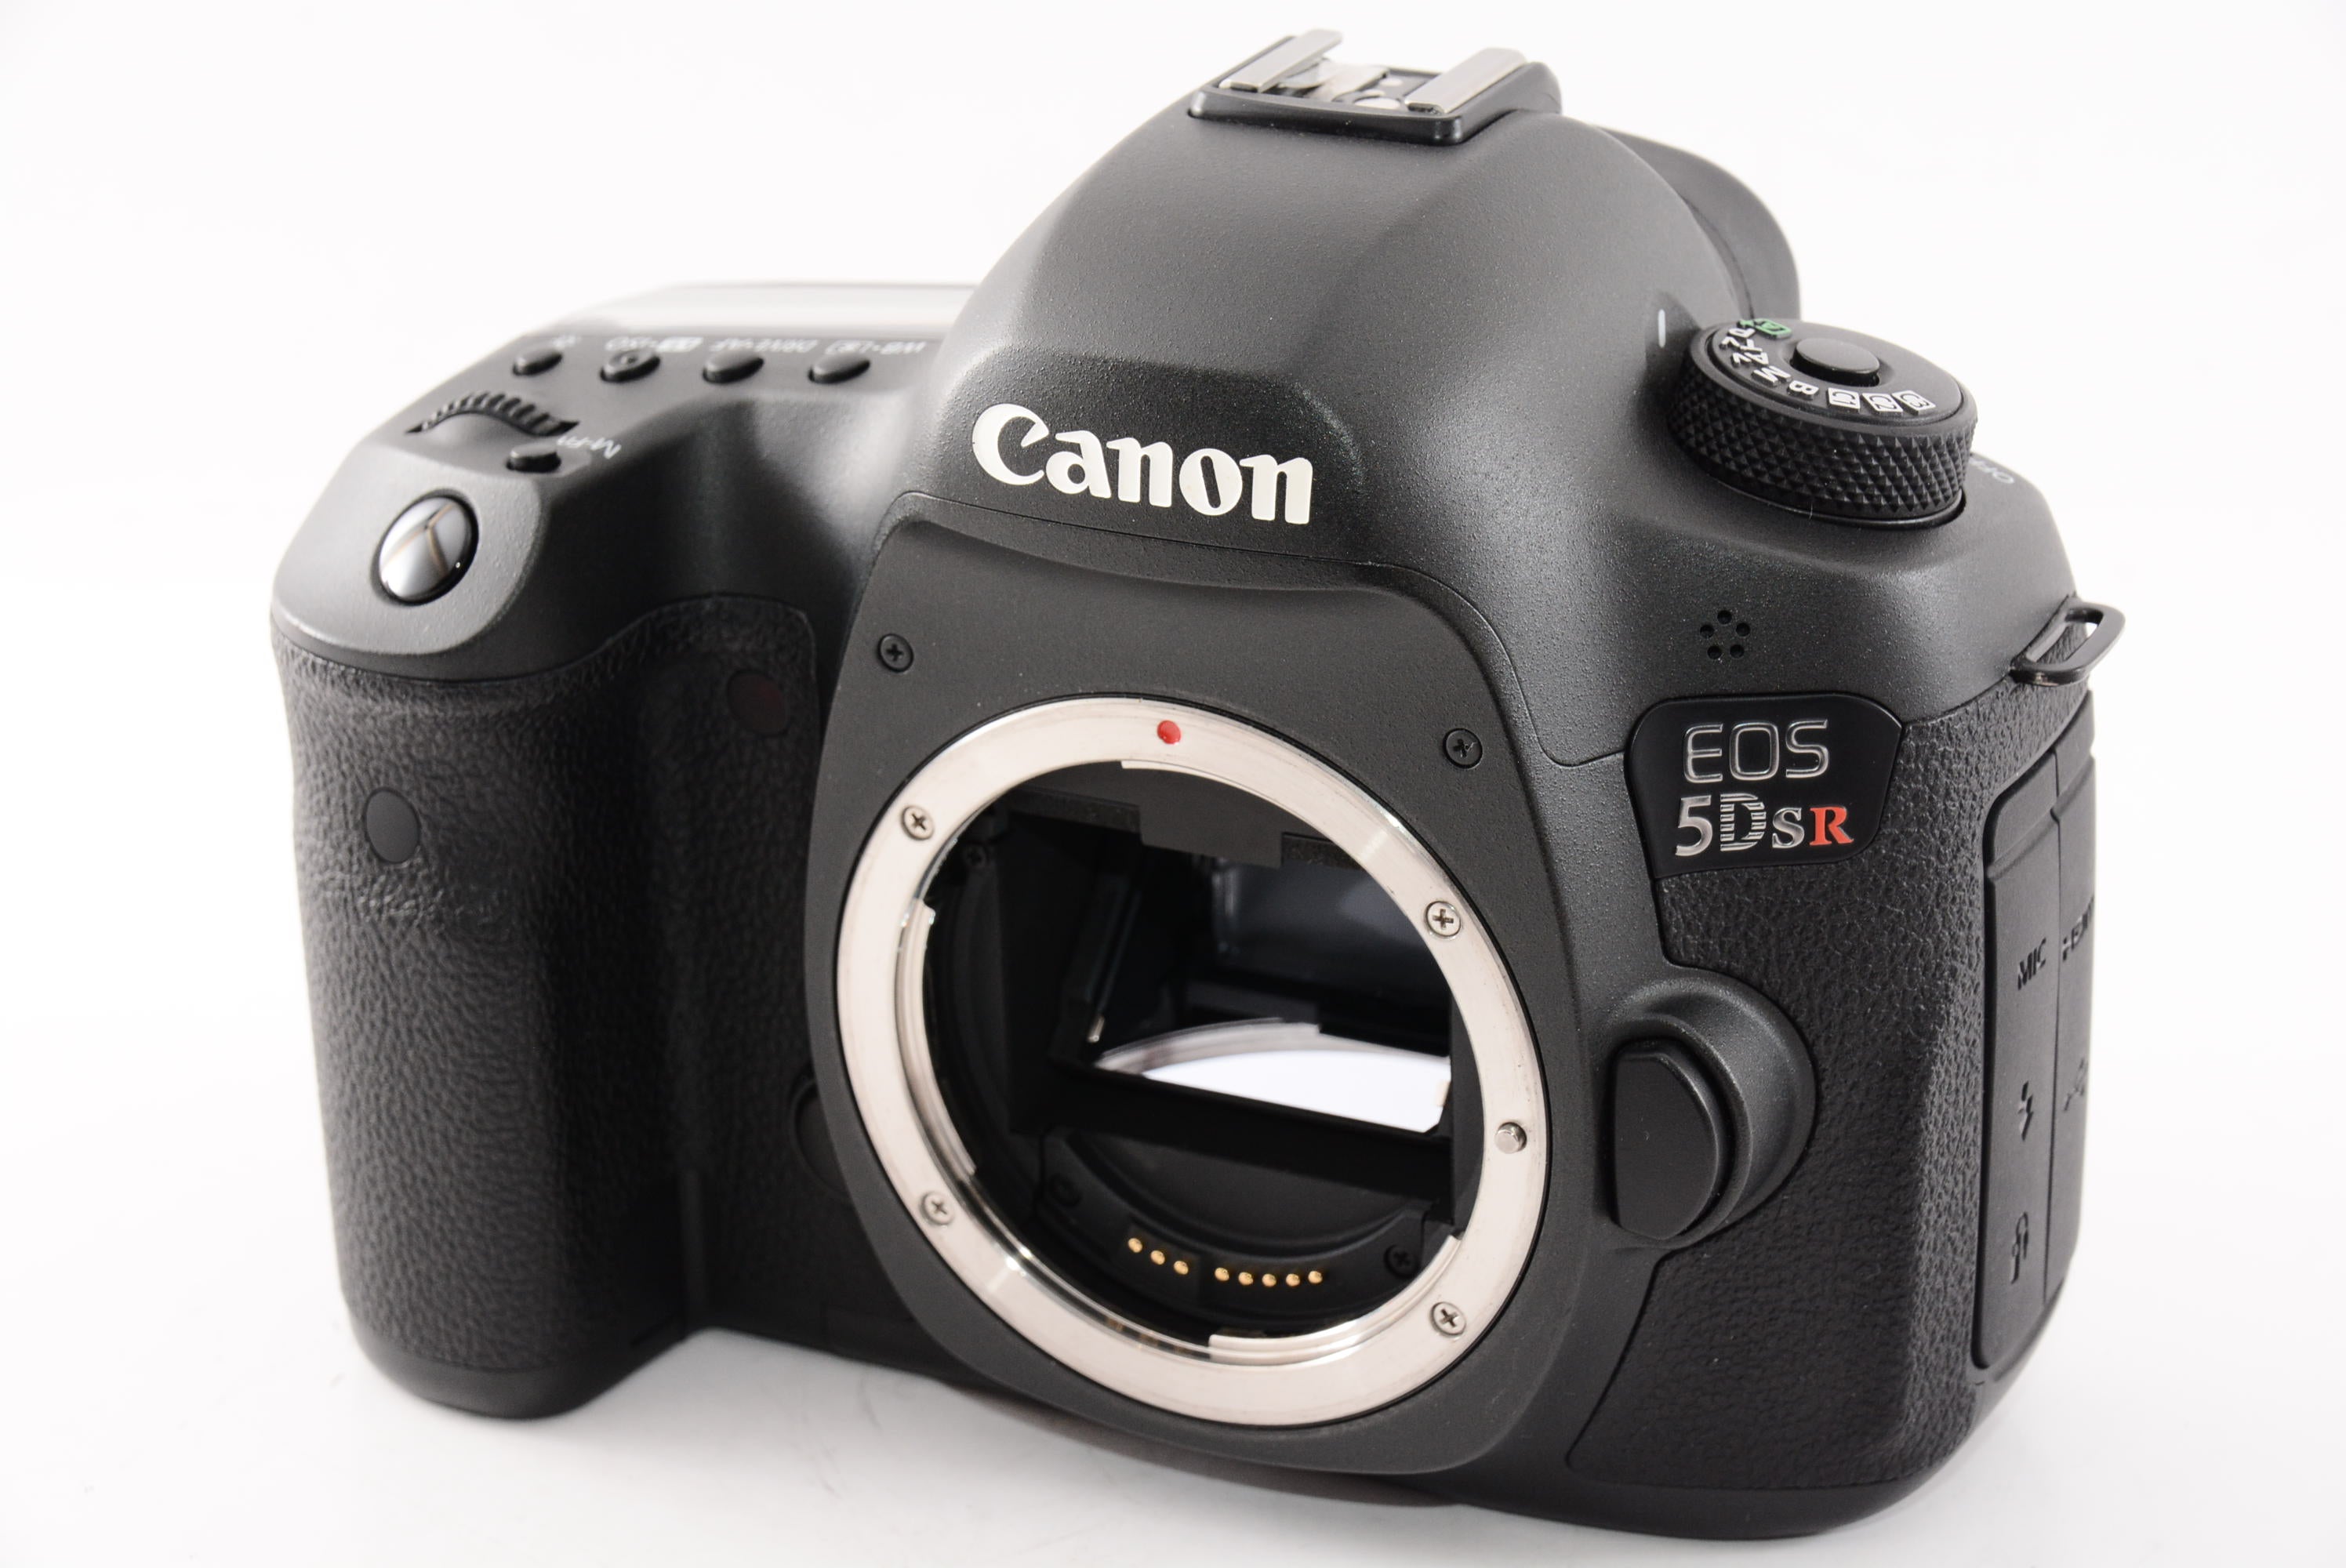 Canon デジタル一眼レフカメラ EOS 5Ds R ボディー EOS5DSR - 2